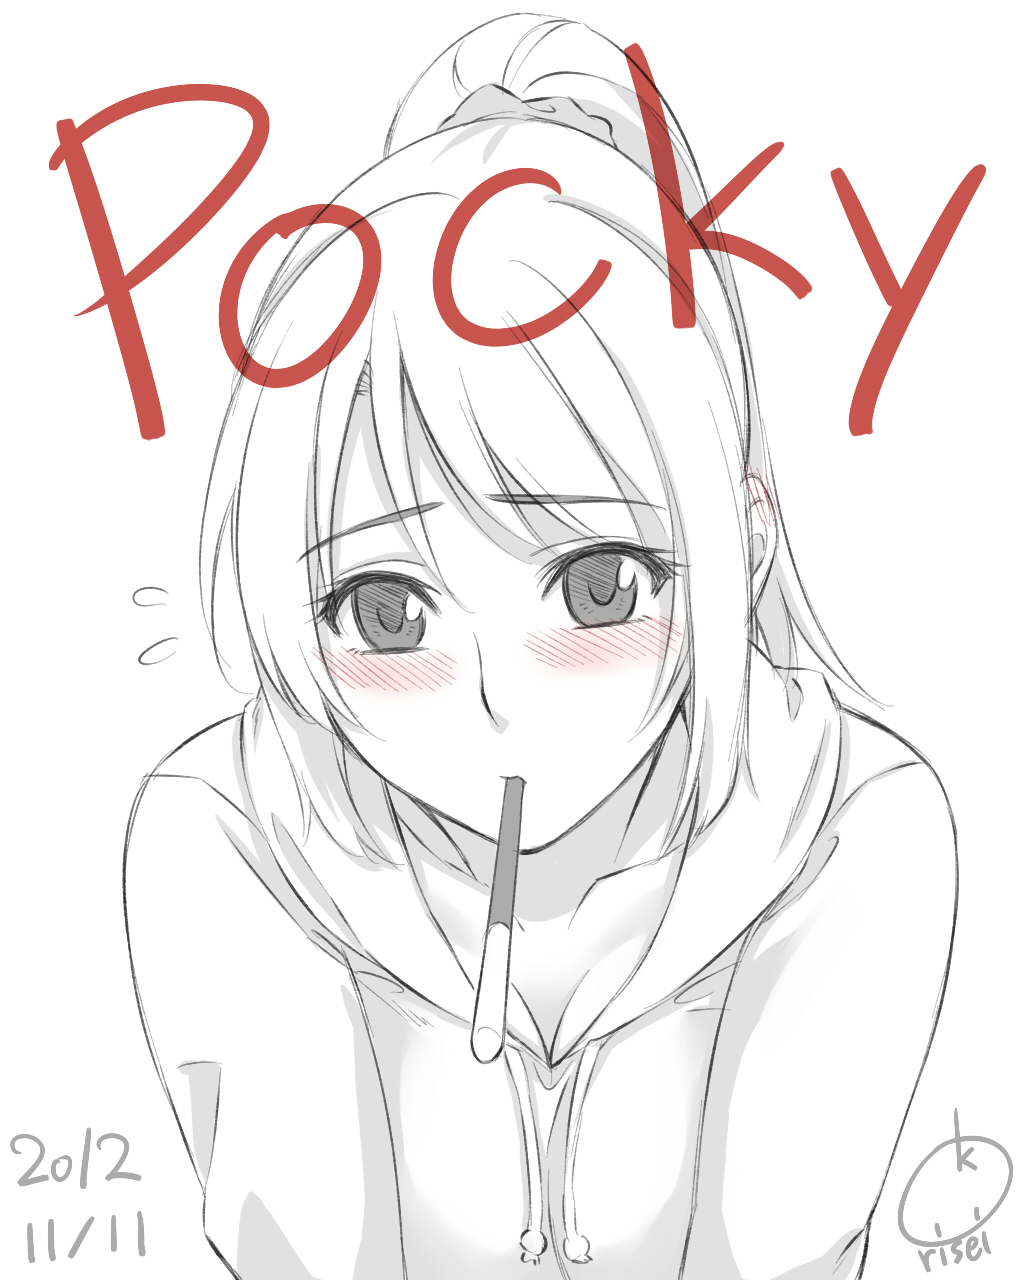 черно белая картинка смущённая аниме девушка pocky художник risei_k 2012 год